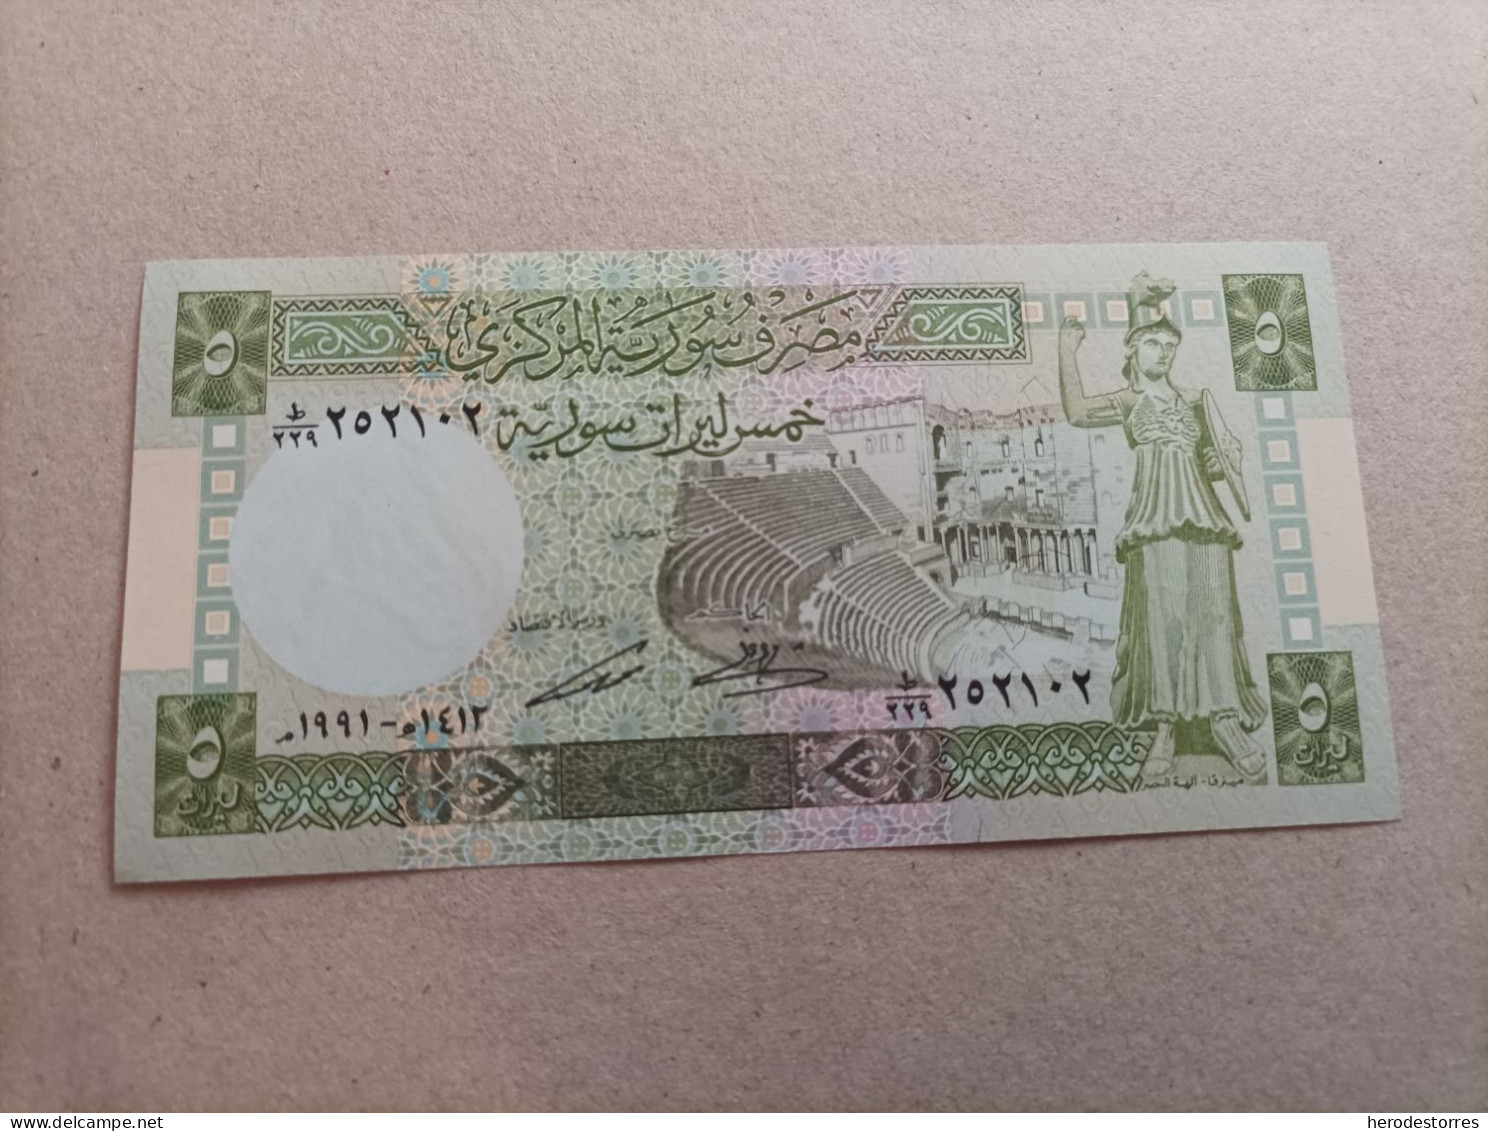 Billete De Siria De 5 Syrian Pounds, Año 1991, UNC - Syria